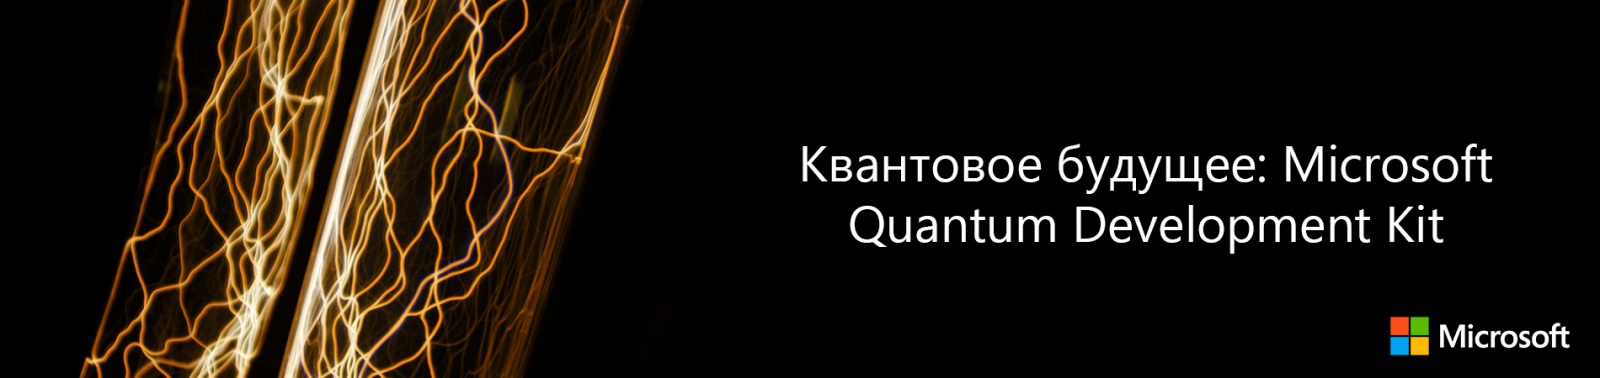 Квантовое будущее: Microsoft Quantum Development Kit - 1